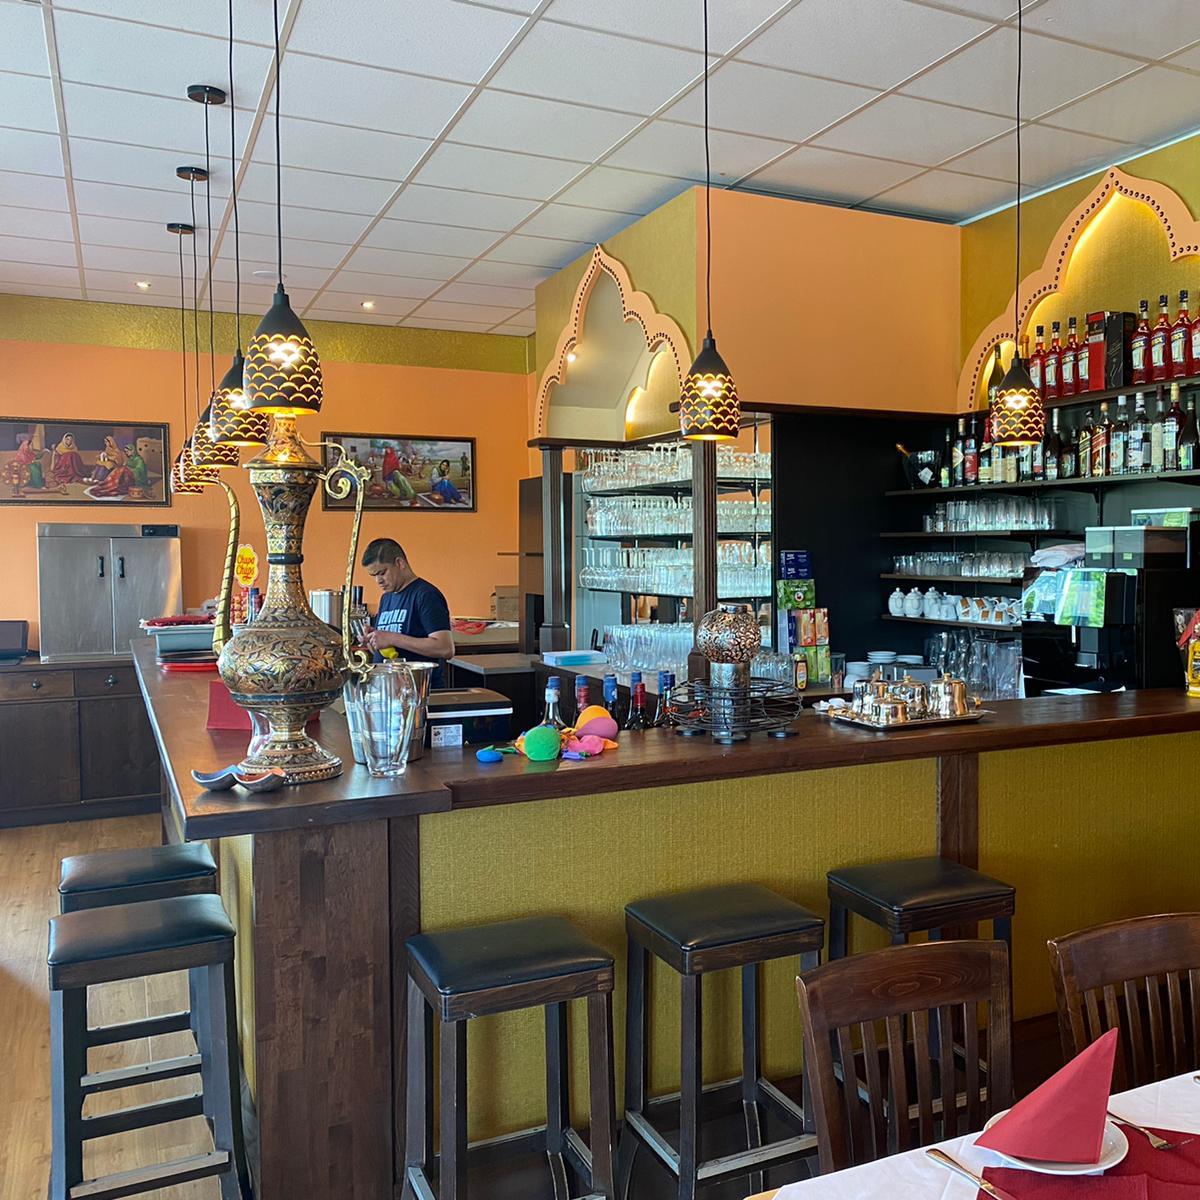 Restaurant "Restaurant Sangam  (Indisches Spezialitätenrestaurant)" in Zwickau